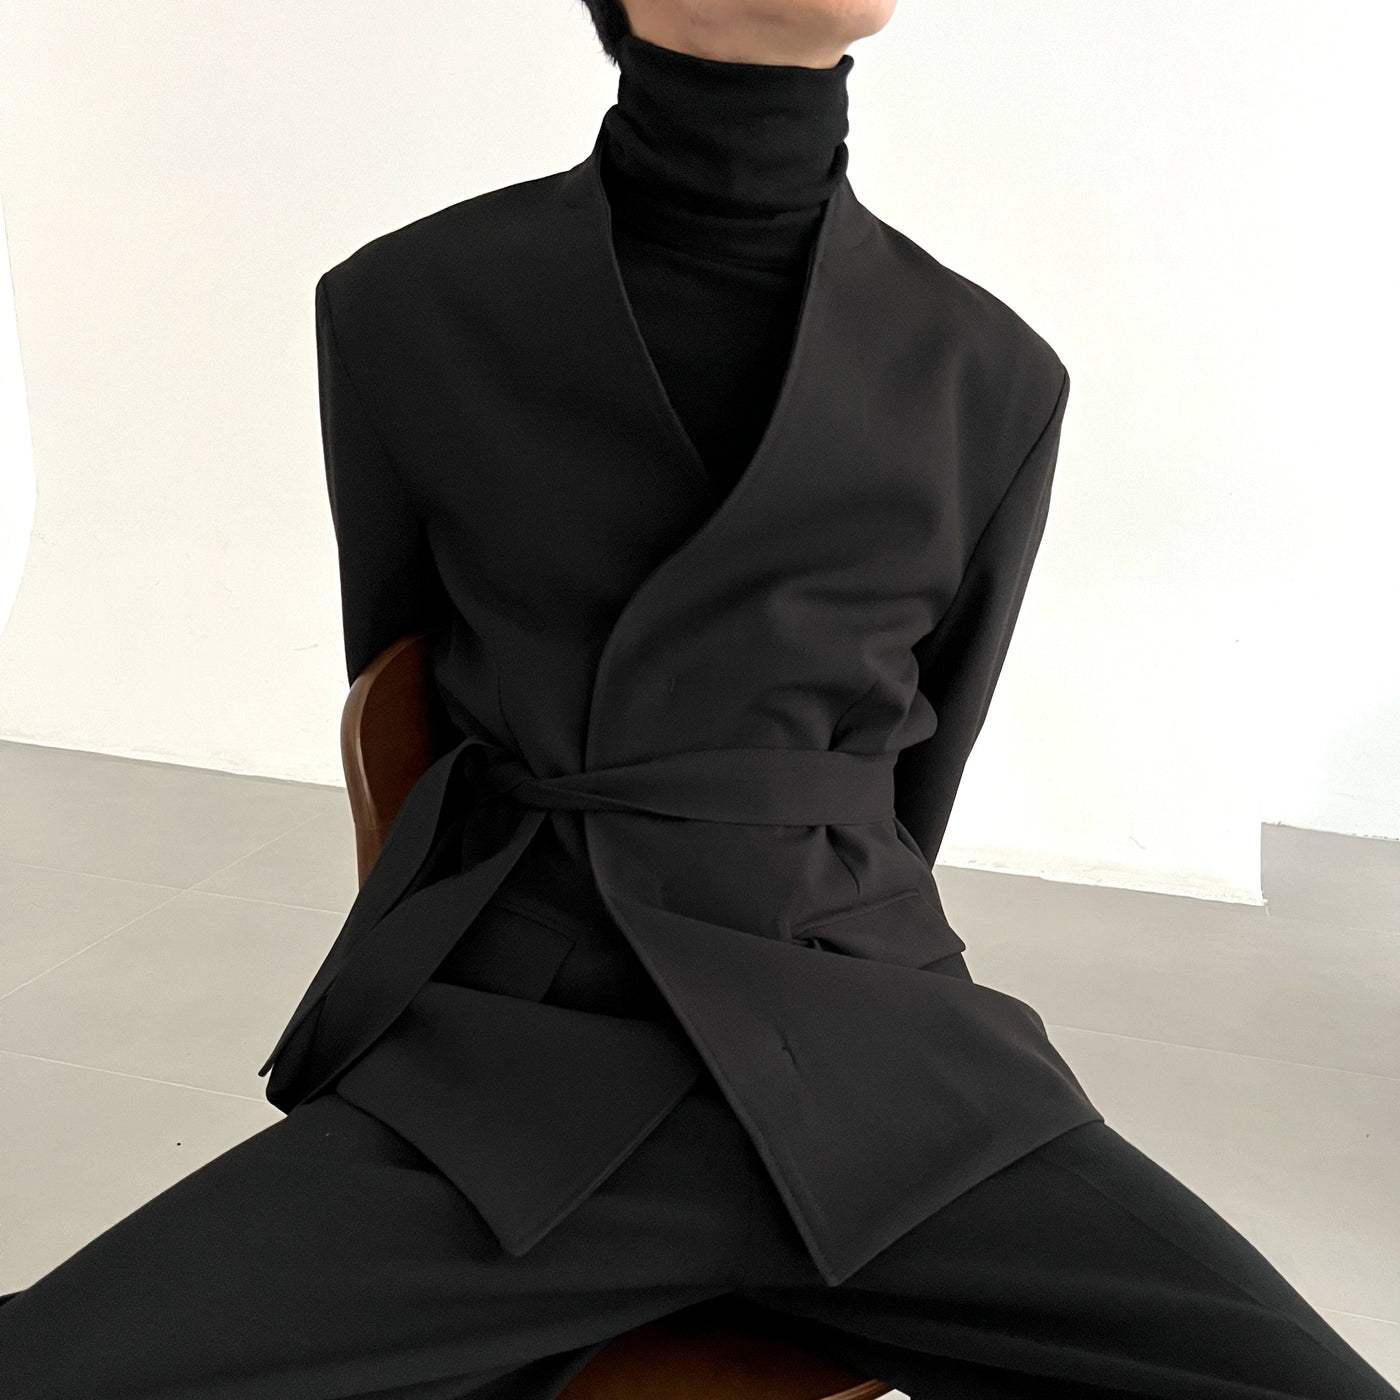 Zhou Waist Belt Wrapped Blazer-korean-fashion-Blazer-Zhou's Closet-OH Garments